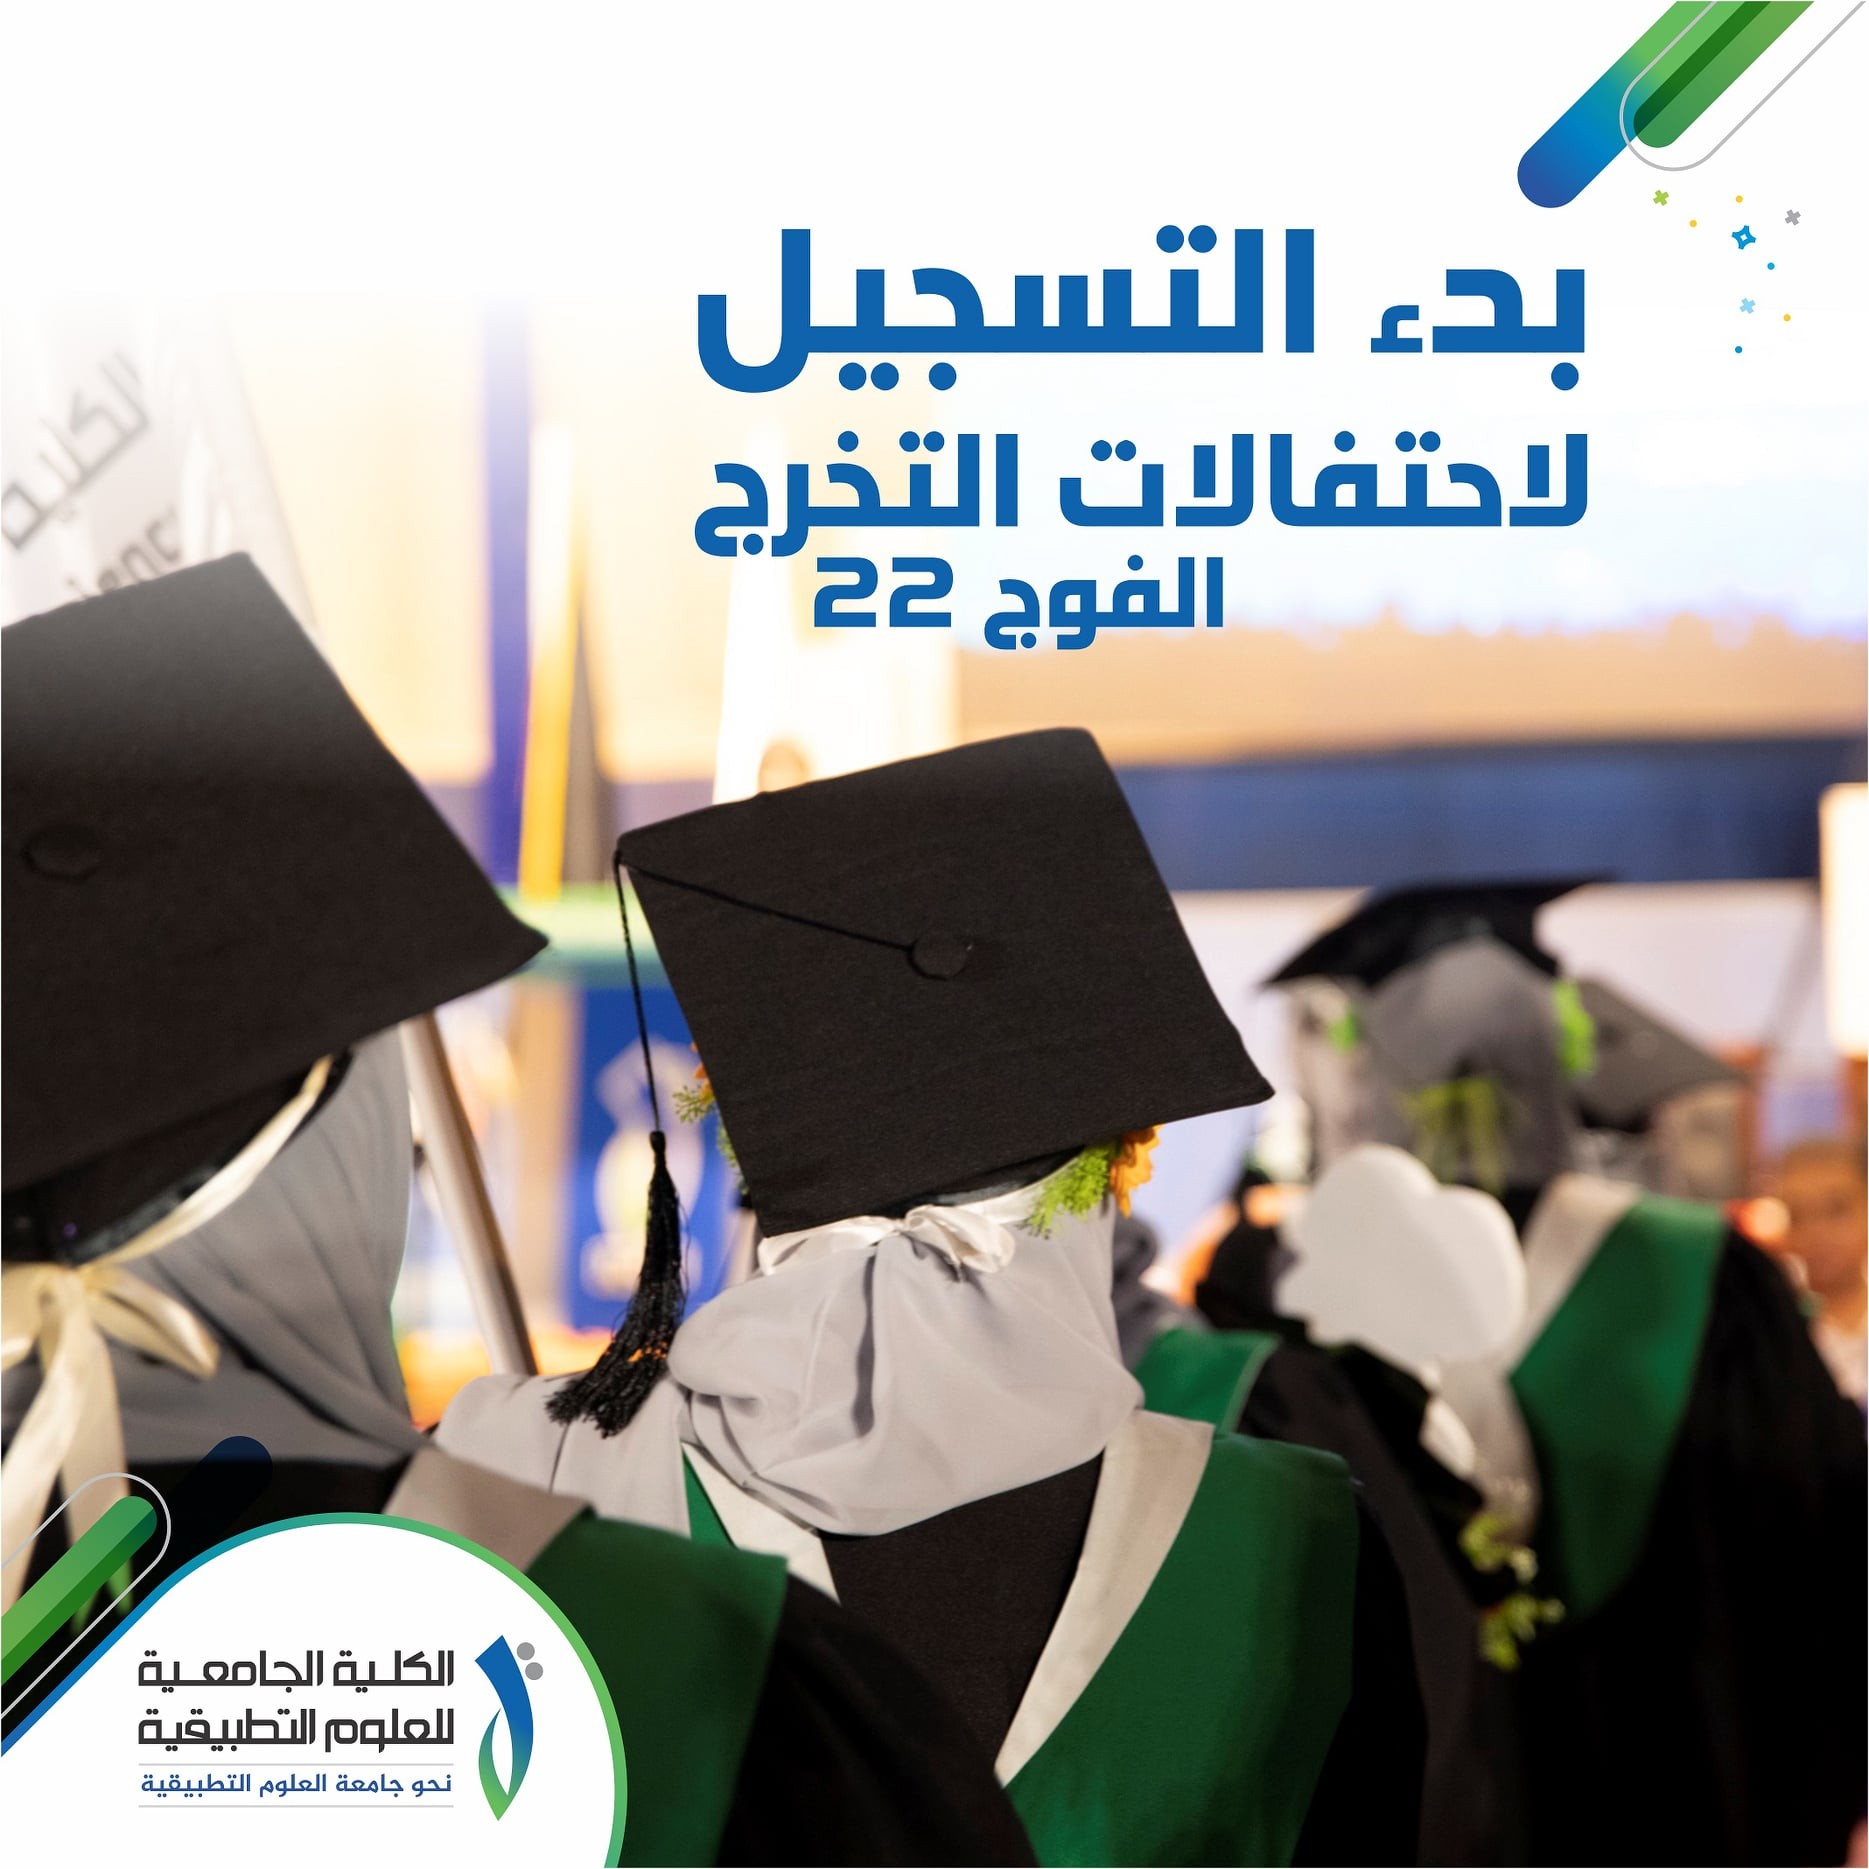 الكلية الجامعية للعلوم التطبيقية بغزة تعلن عن بدء التسجيل لاحتفالات التخرج 2021